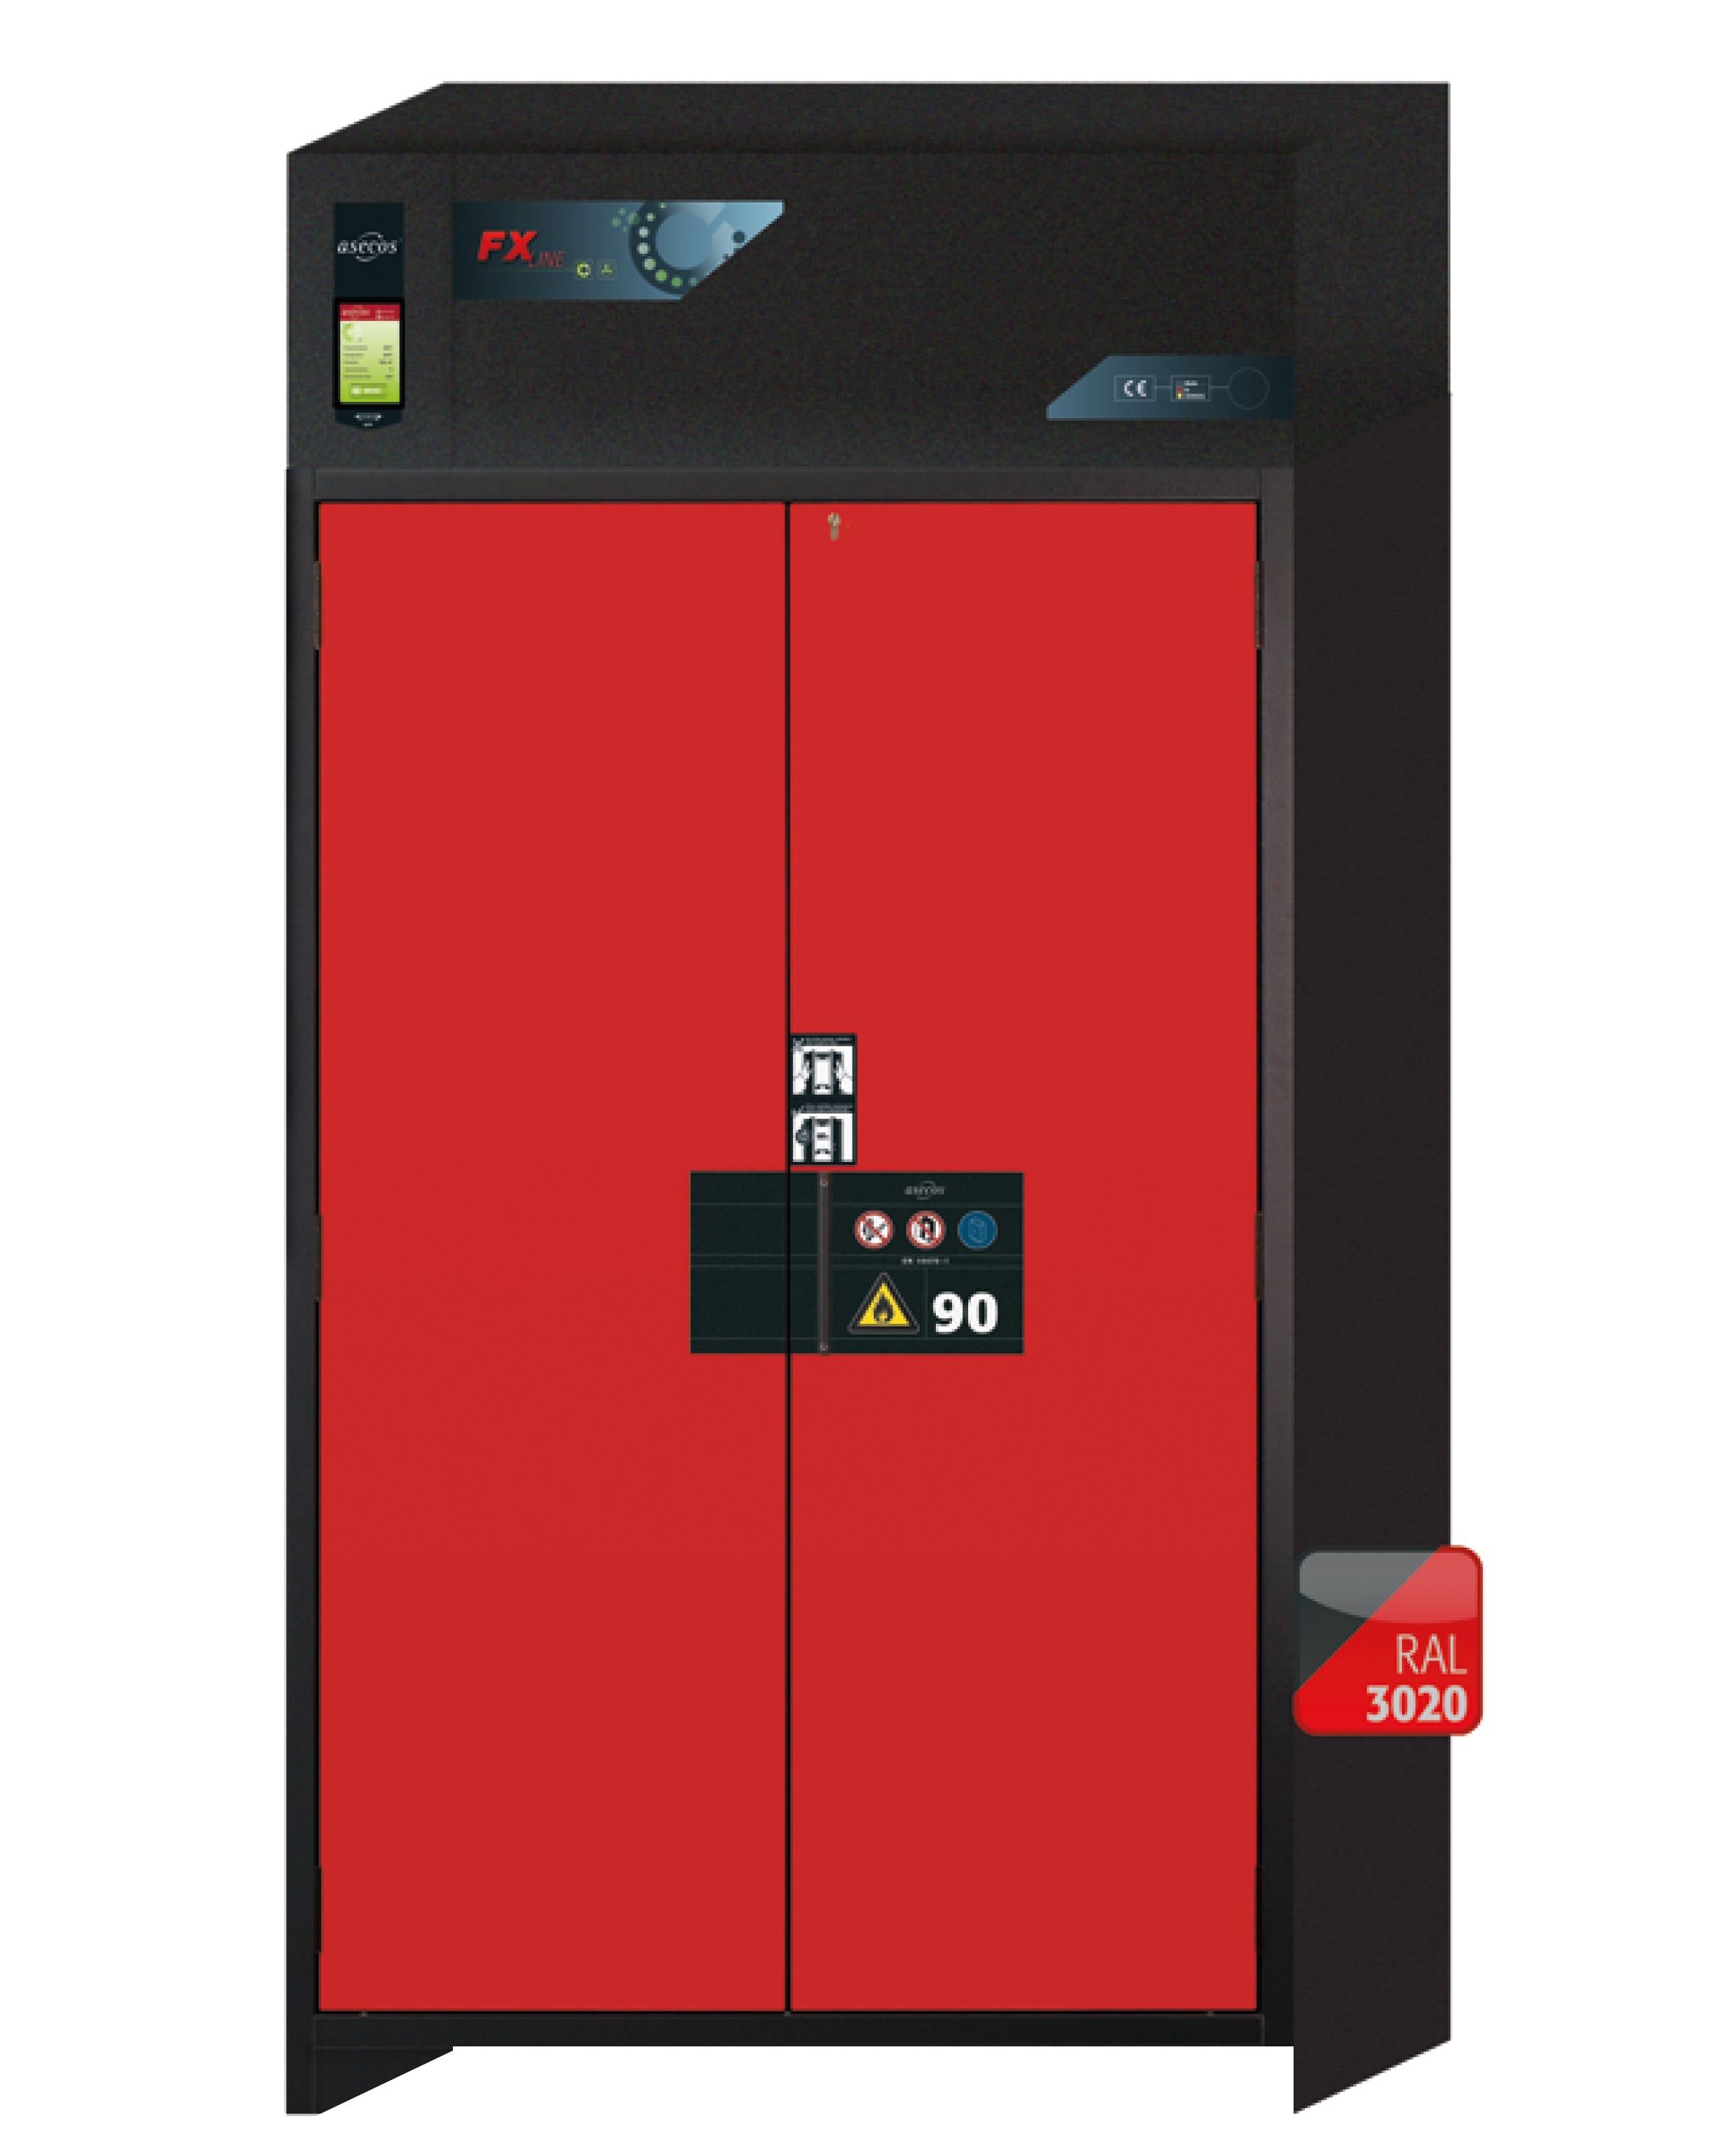 Armoire de filtration d'air recyclé type 90 FX-PEGASUS-90 modèle FX90.229.120.WDAC en rouge signalisation RAL 3020 avec 4 plateaux coulissants standard (acier inoxydable 1.4301)